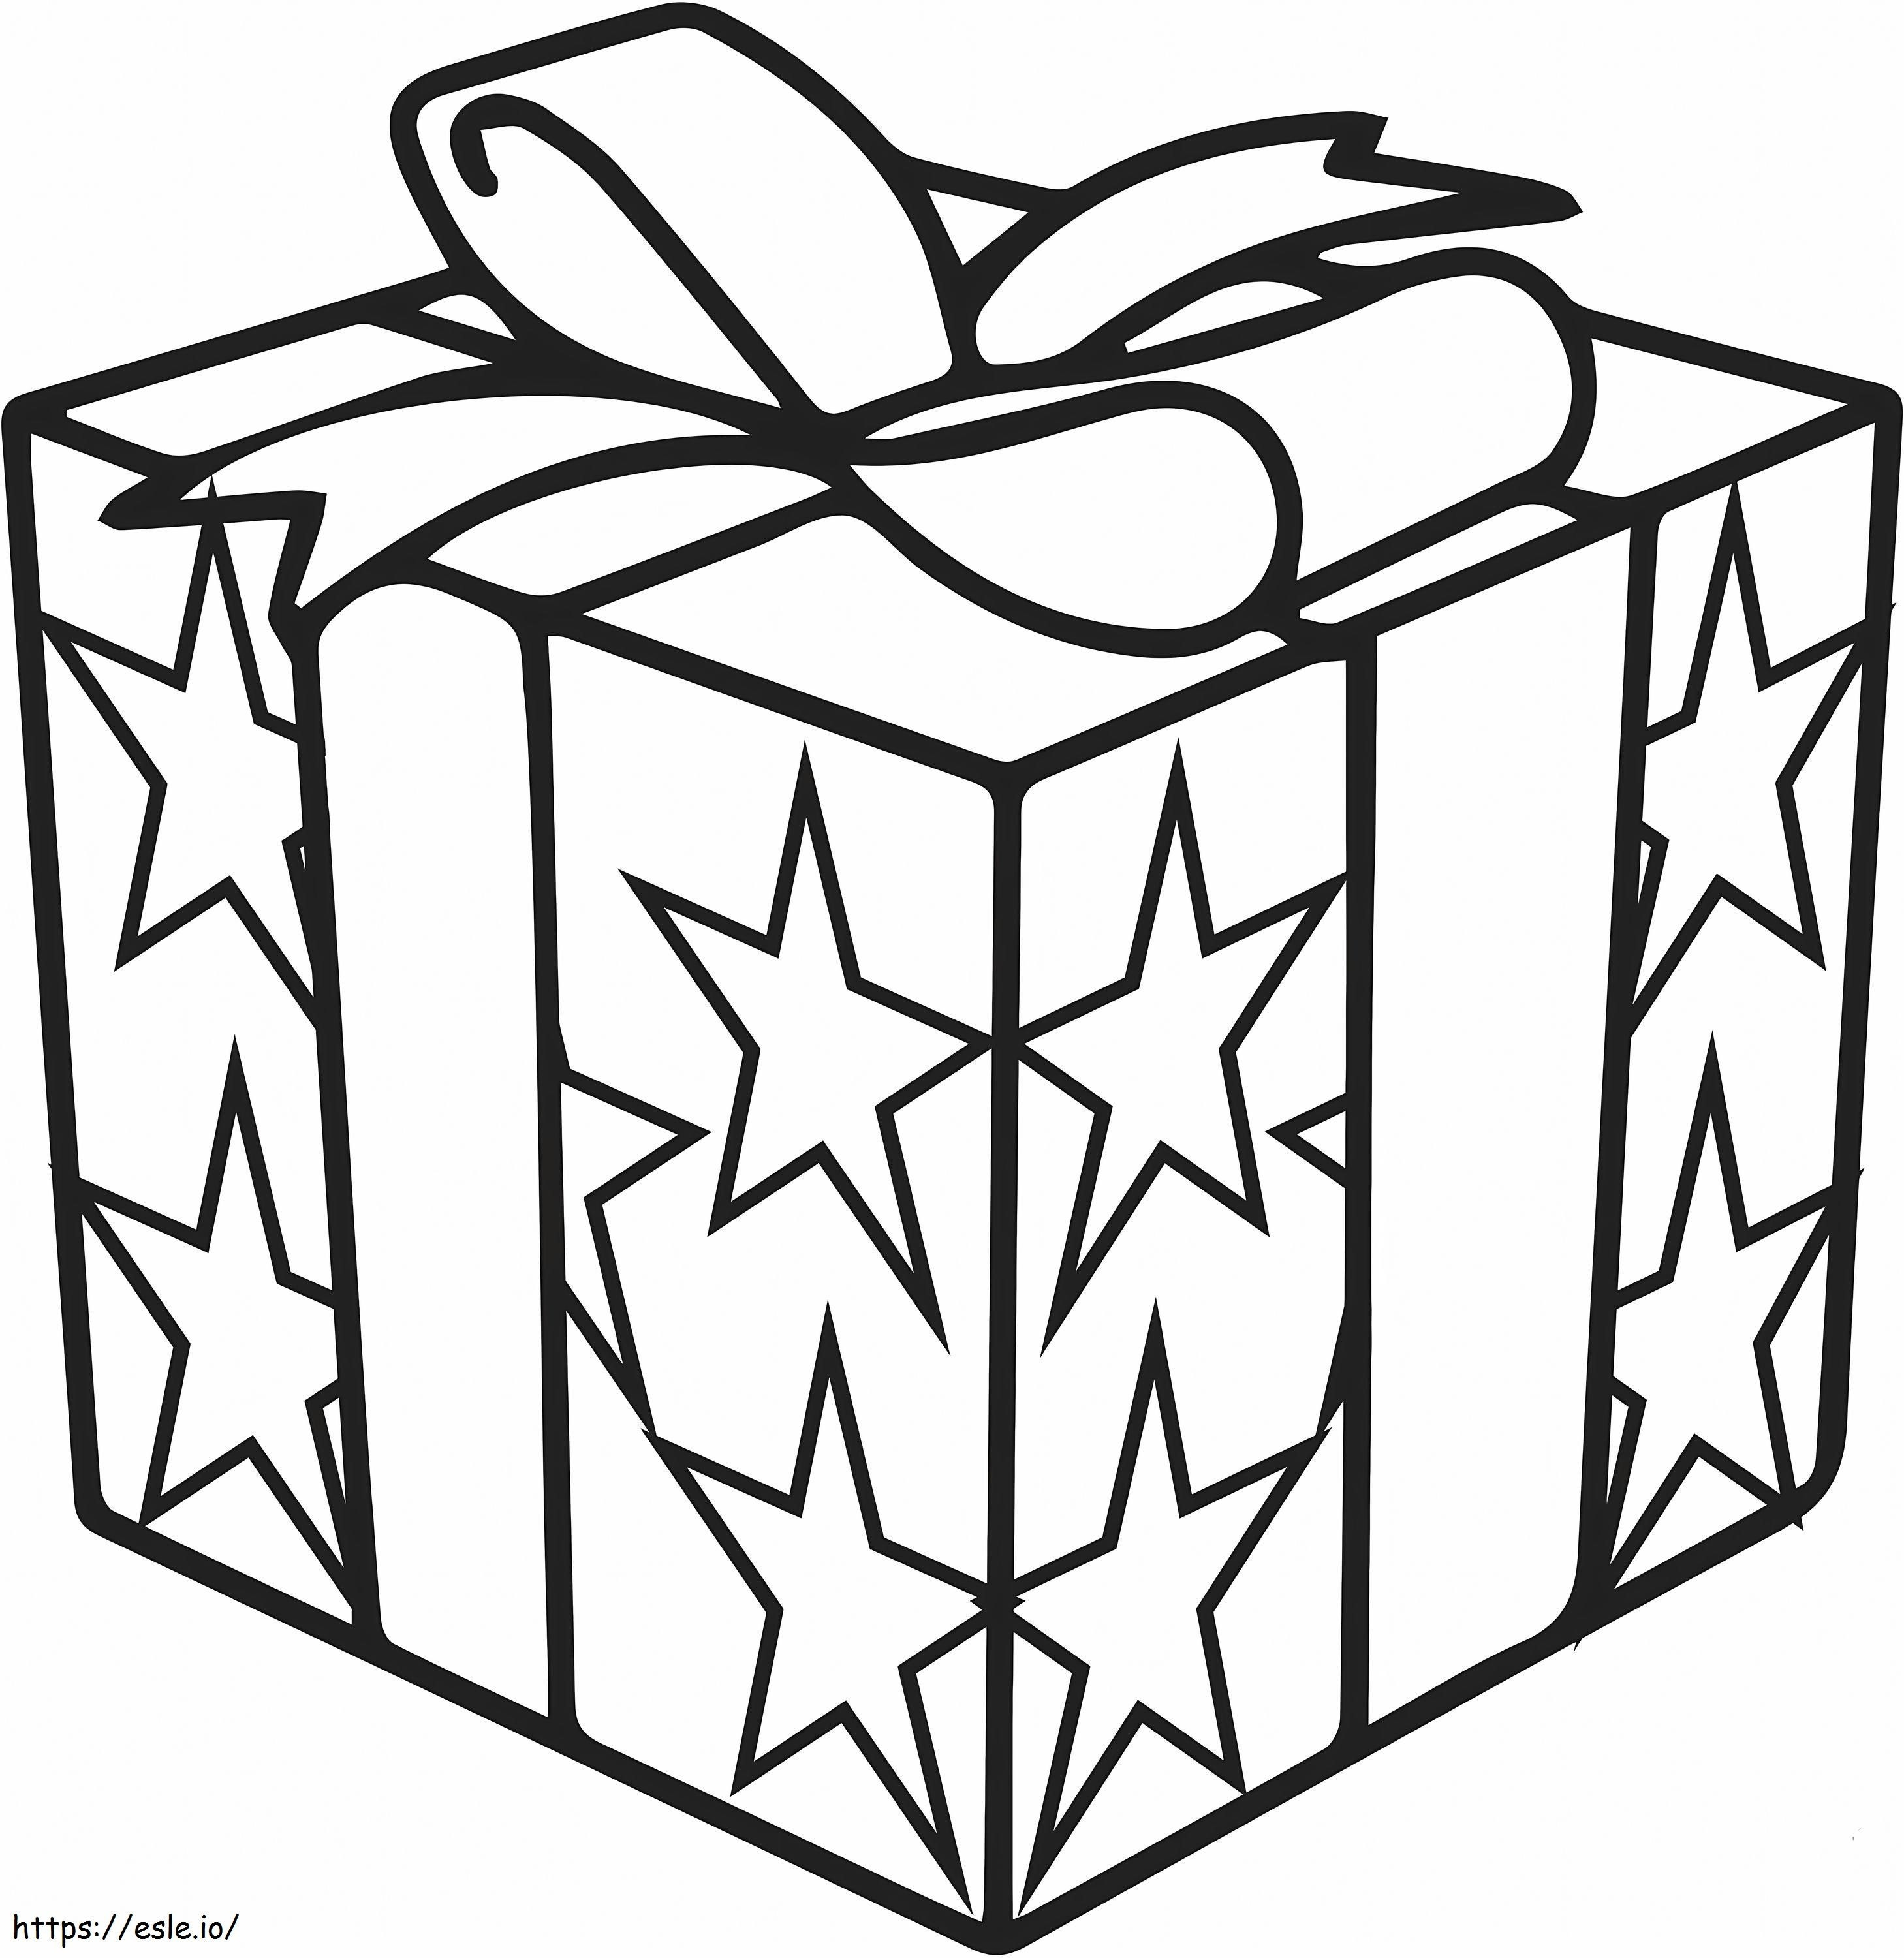 Confezione regalo di Natale con disegno di stelle da colorare